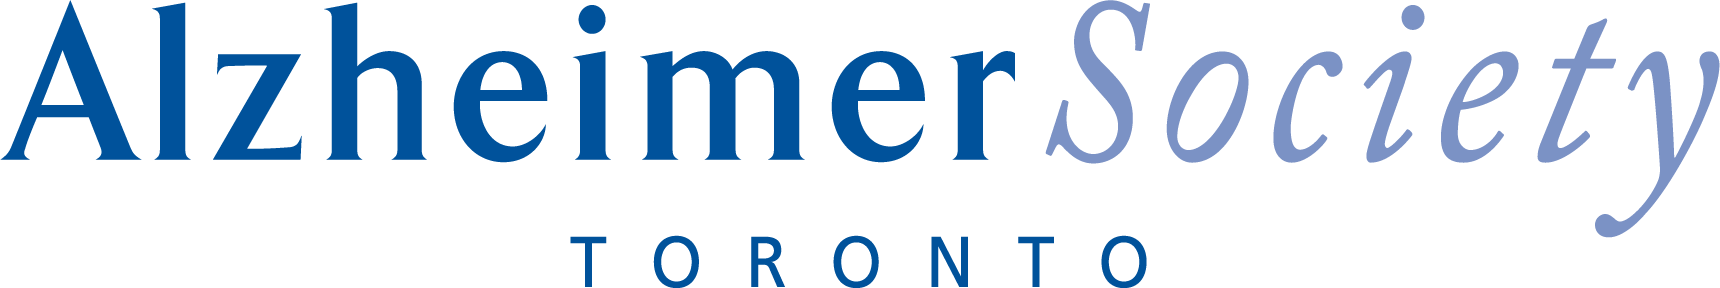  Alzheimer Society of Toronto  logo